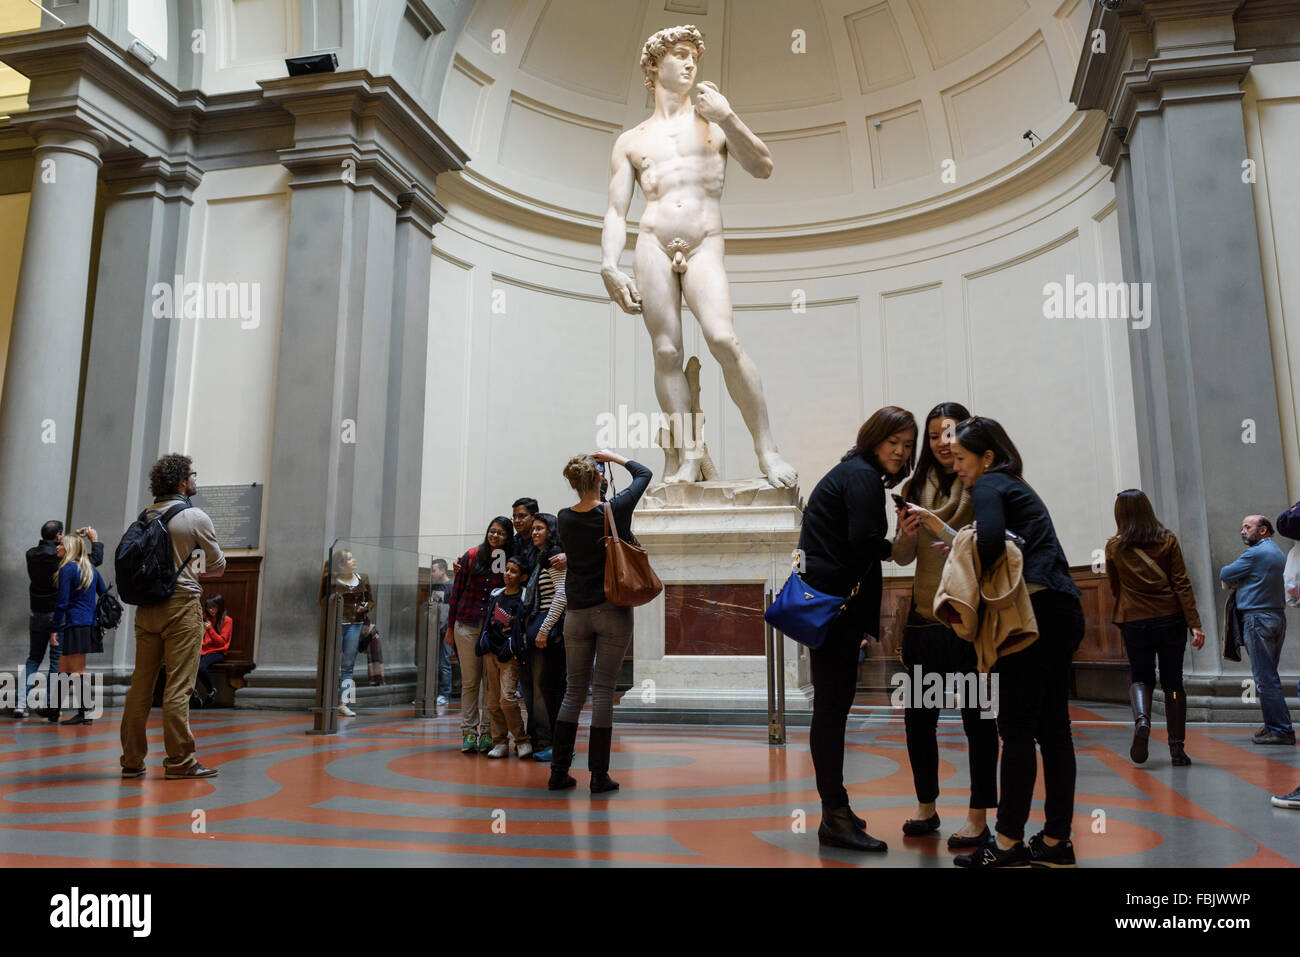 Firenze. L'Italia. Turisti visitano Michelangelo della statua del David alla Galleria dell'Accademia. Galleria dell'Accademia di Firenze. Foto Stock